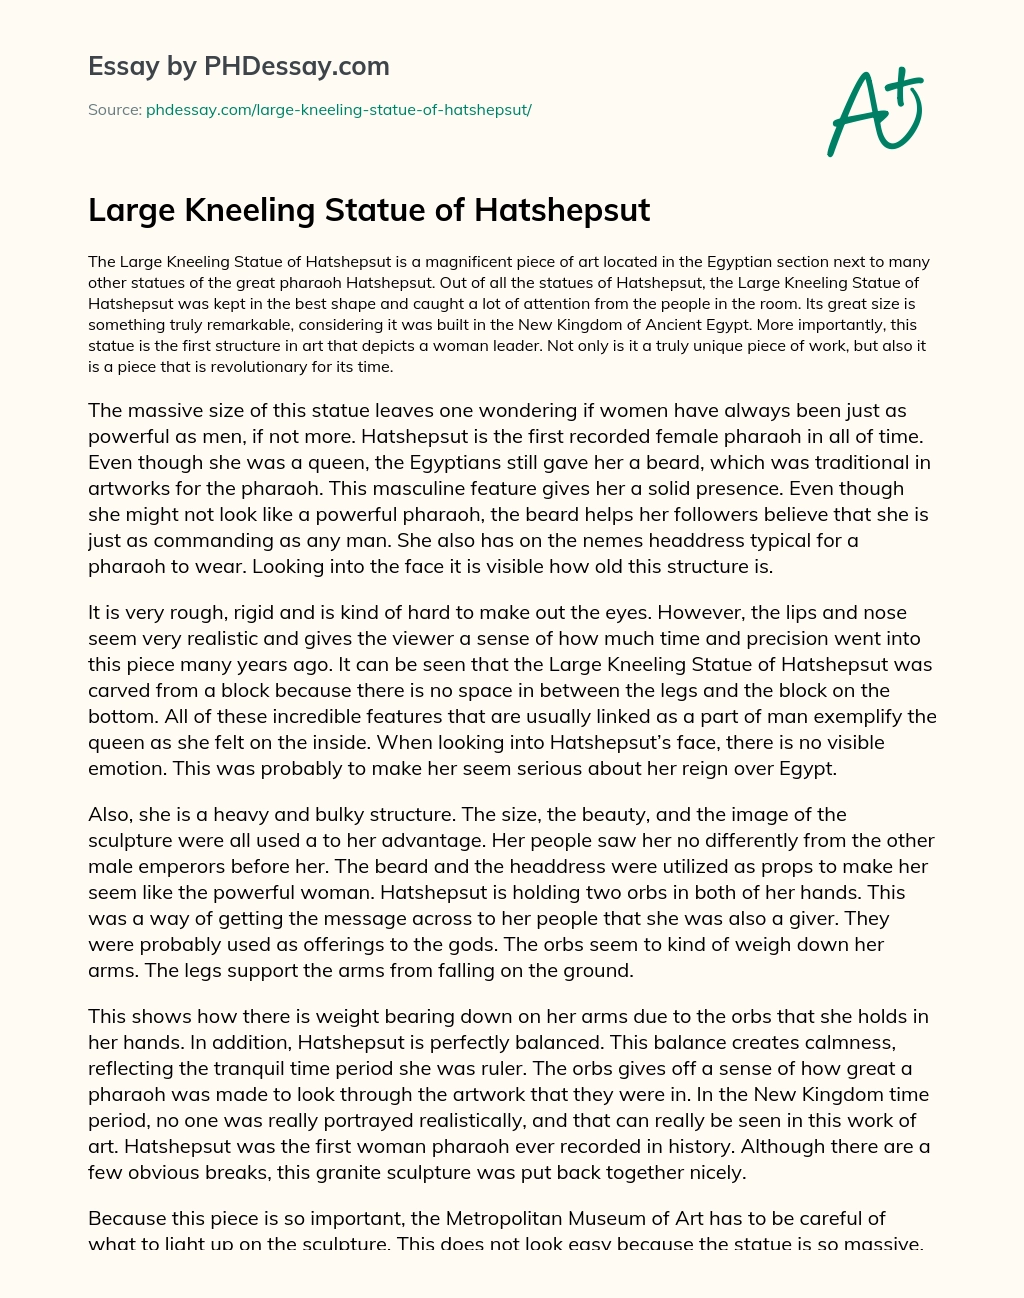 Large Kneeling Statue of Hatshepsut essay